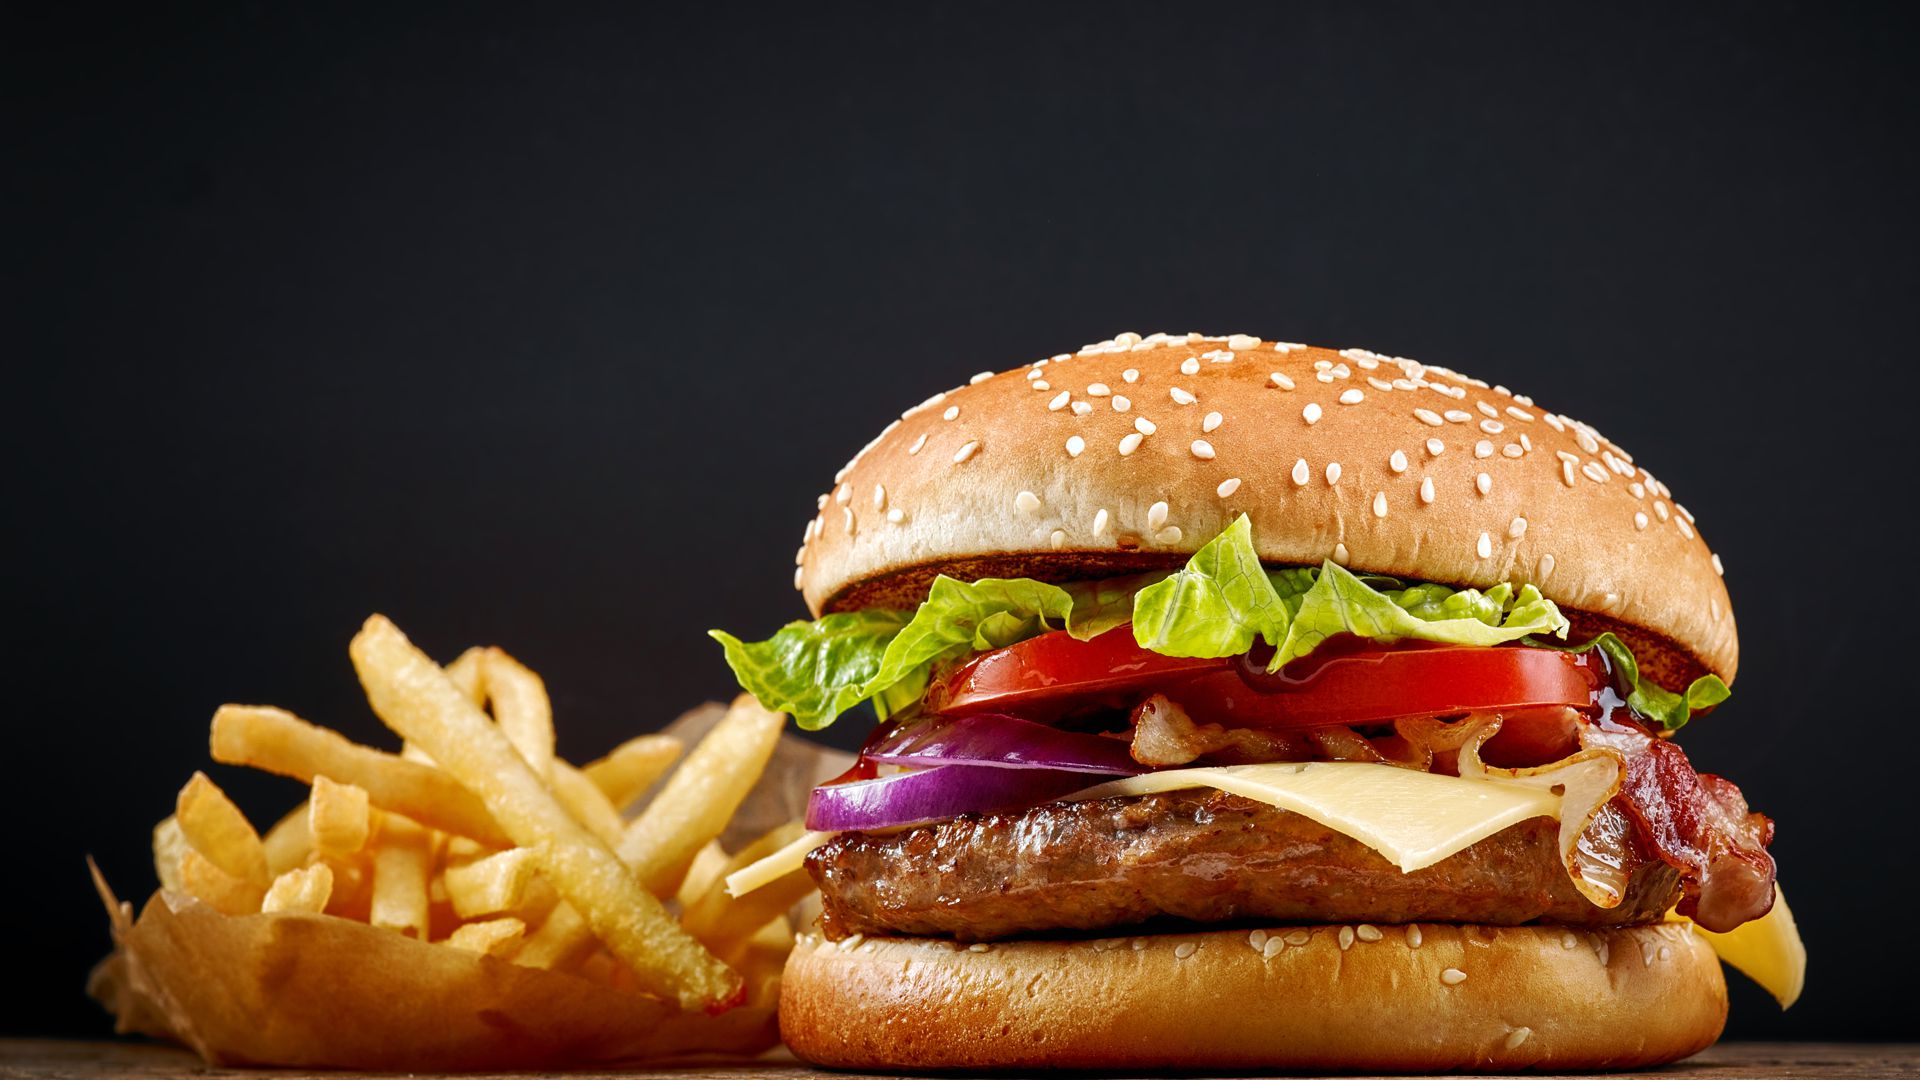 Unter der Auswahl an Speisen finden sich auch leckere Burger.